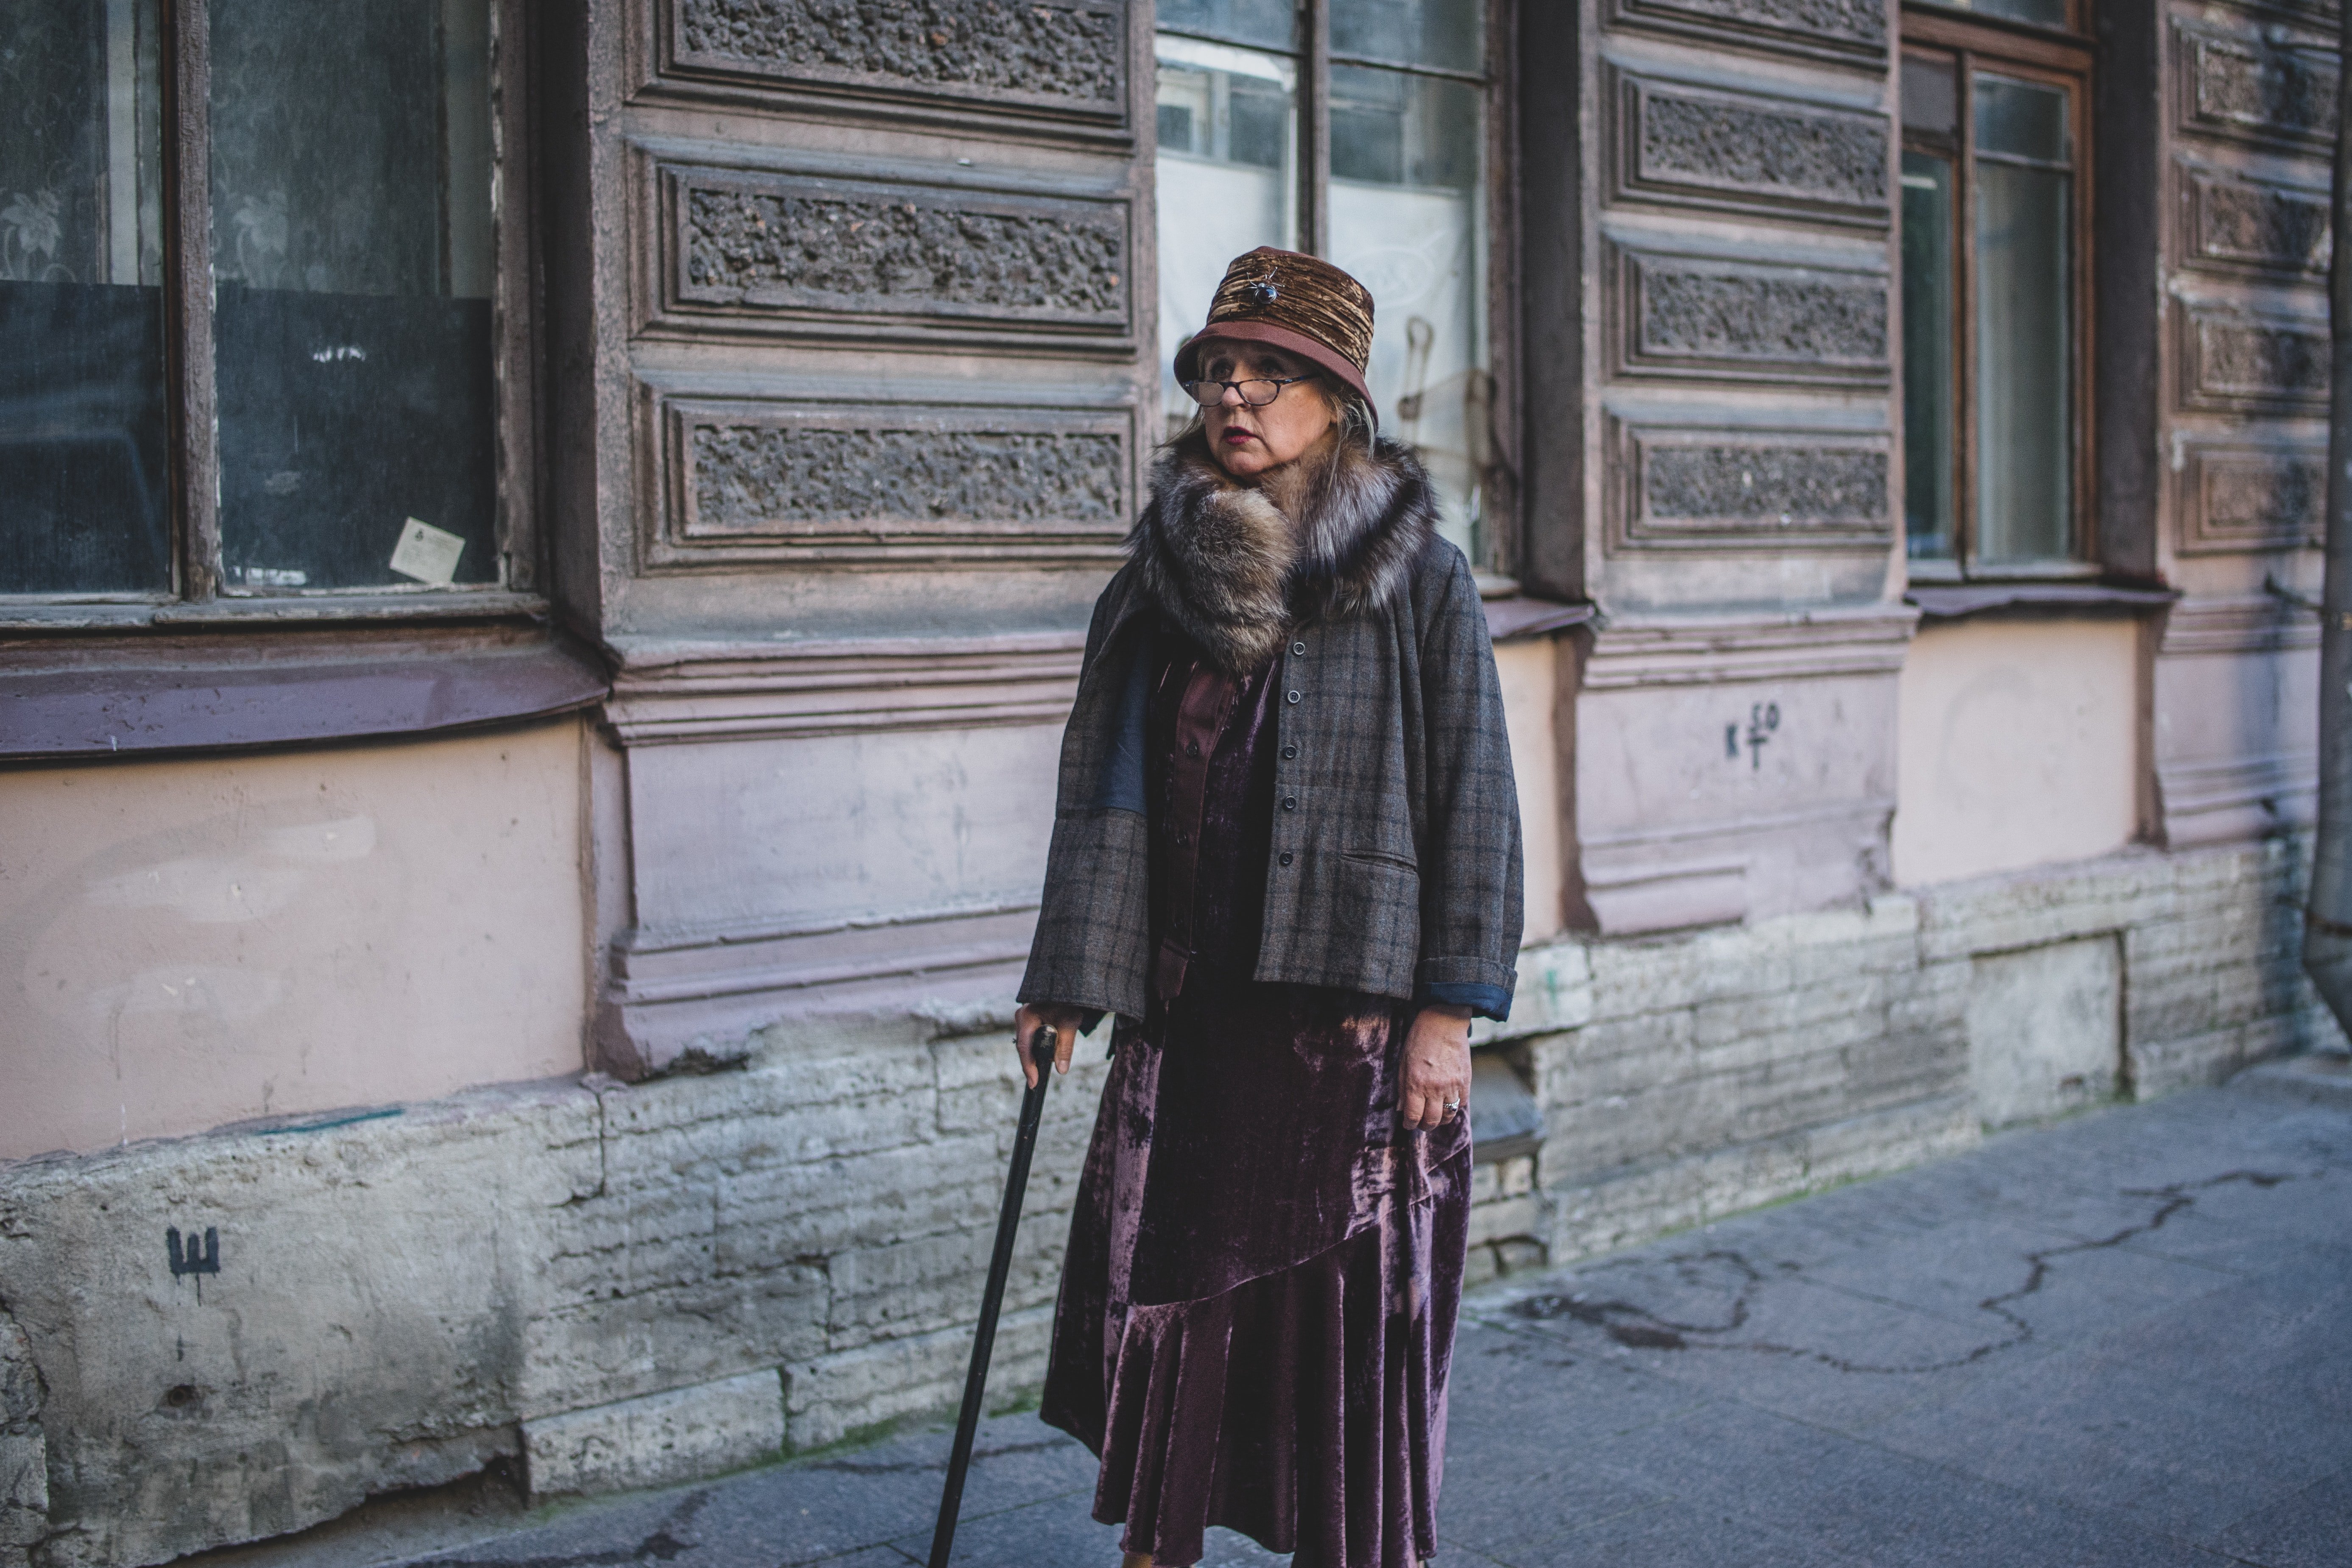 Anciana camina por la calle con abrigo y bastón. | Foto: Unsplash